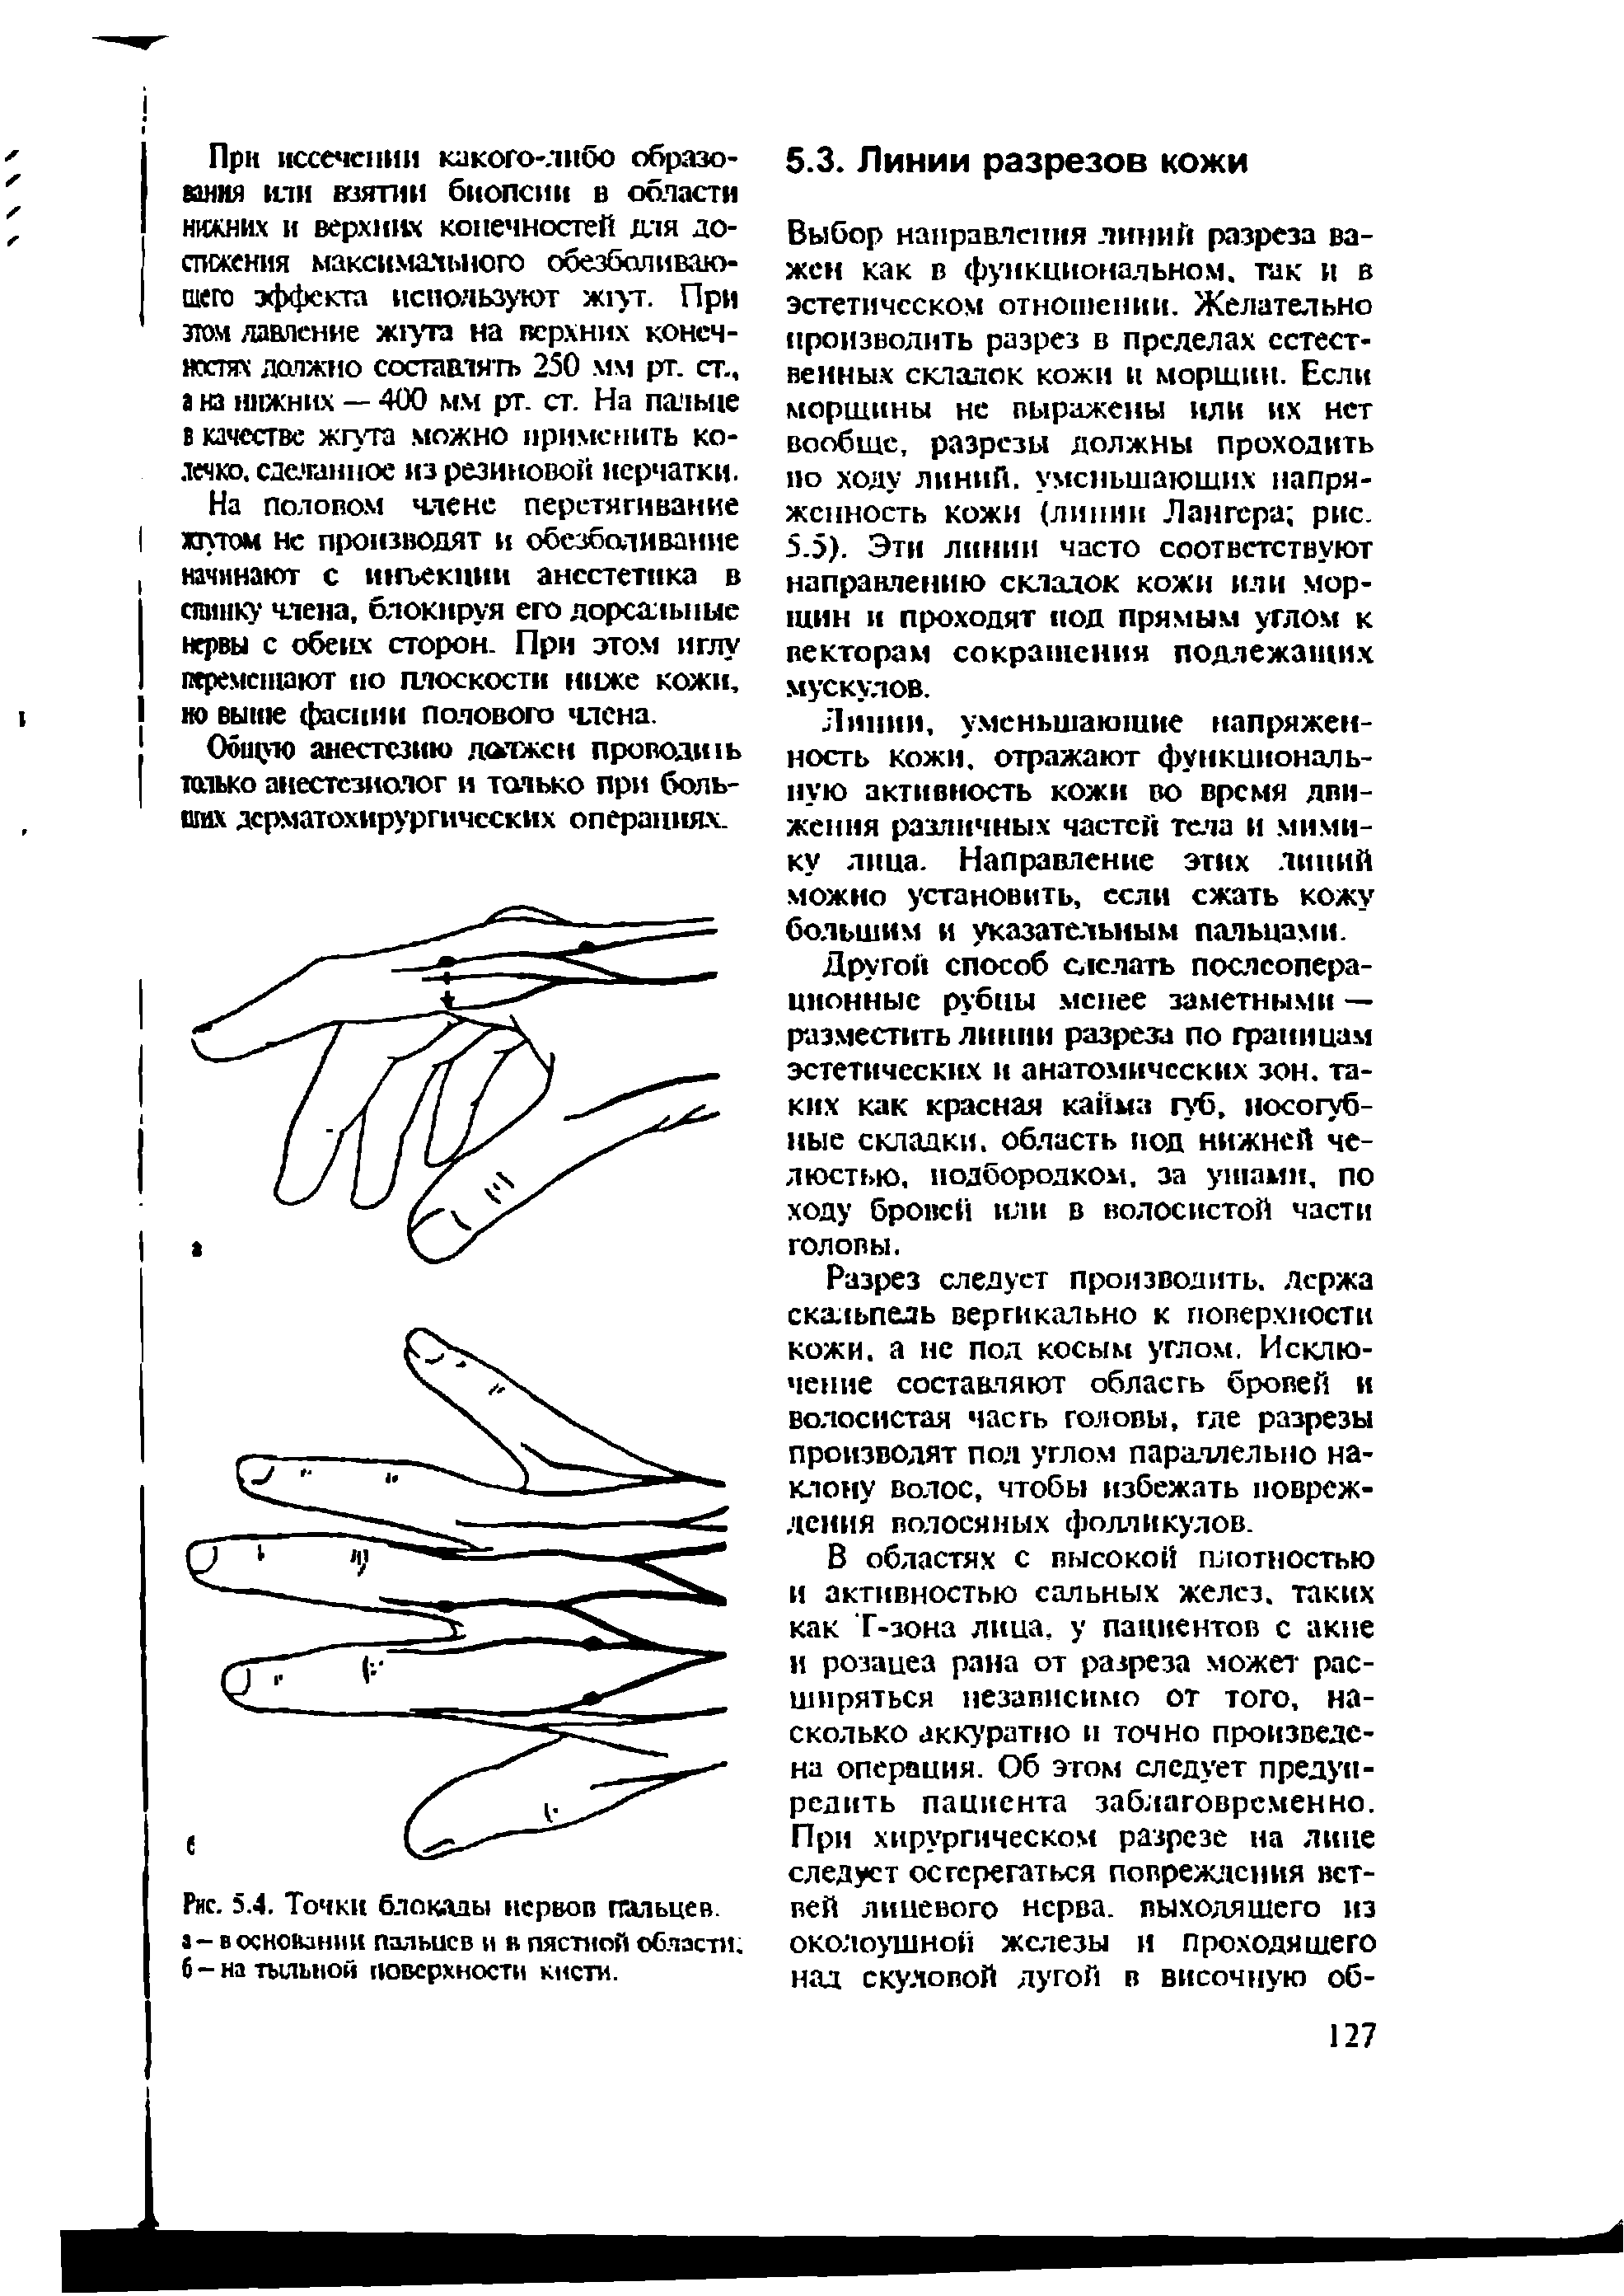 Рис. 5.4. Точки блокады нервов пальцев, а - в основании пальцев и в пястной области, б-на тыльной поверхности кисти.